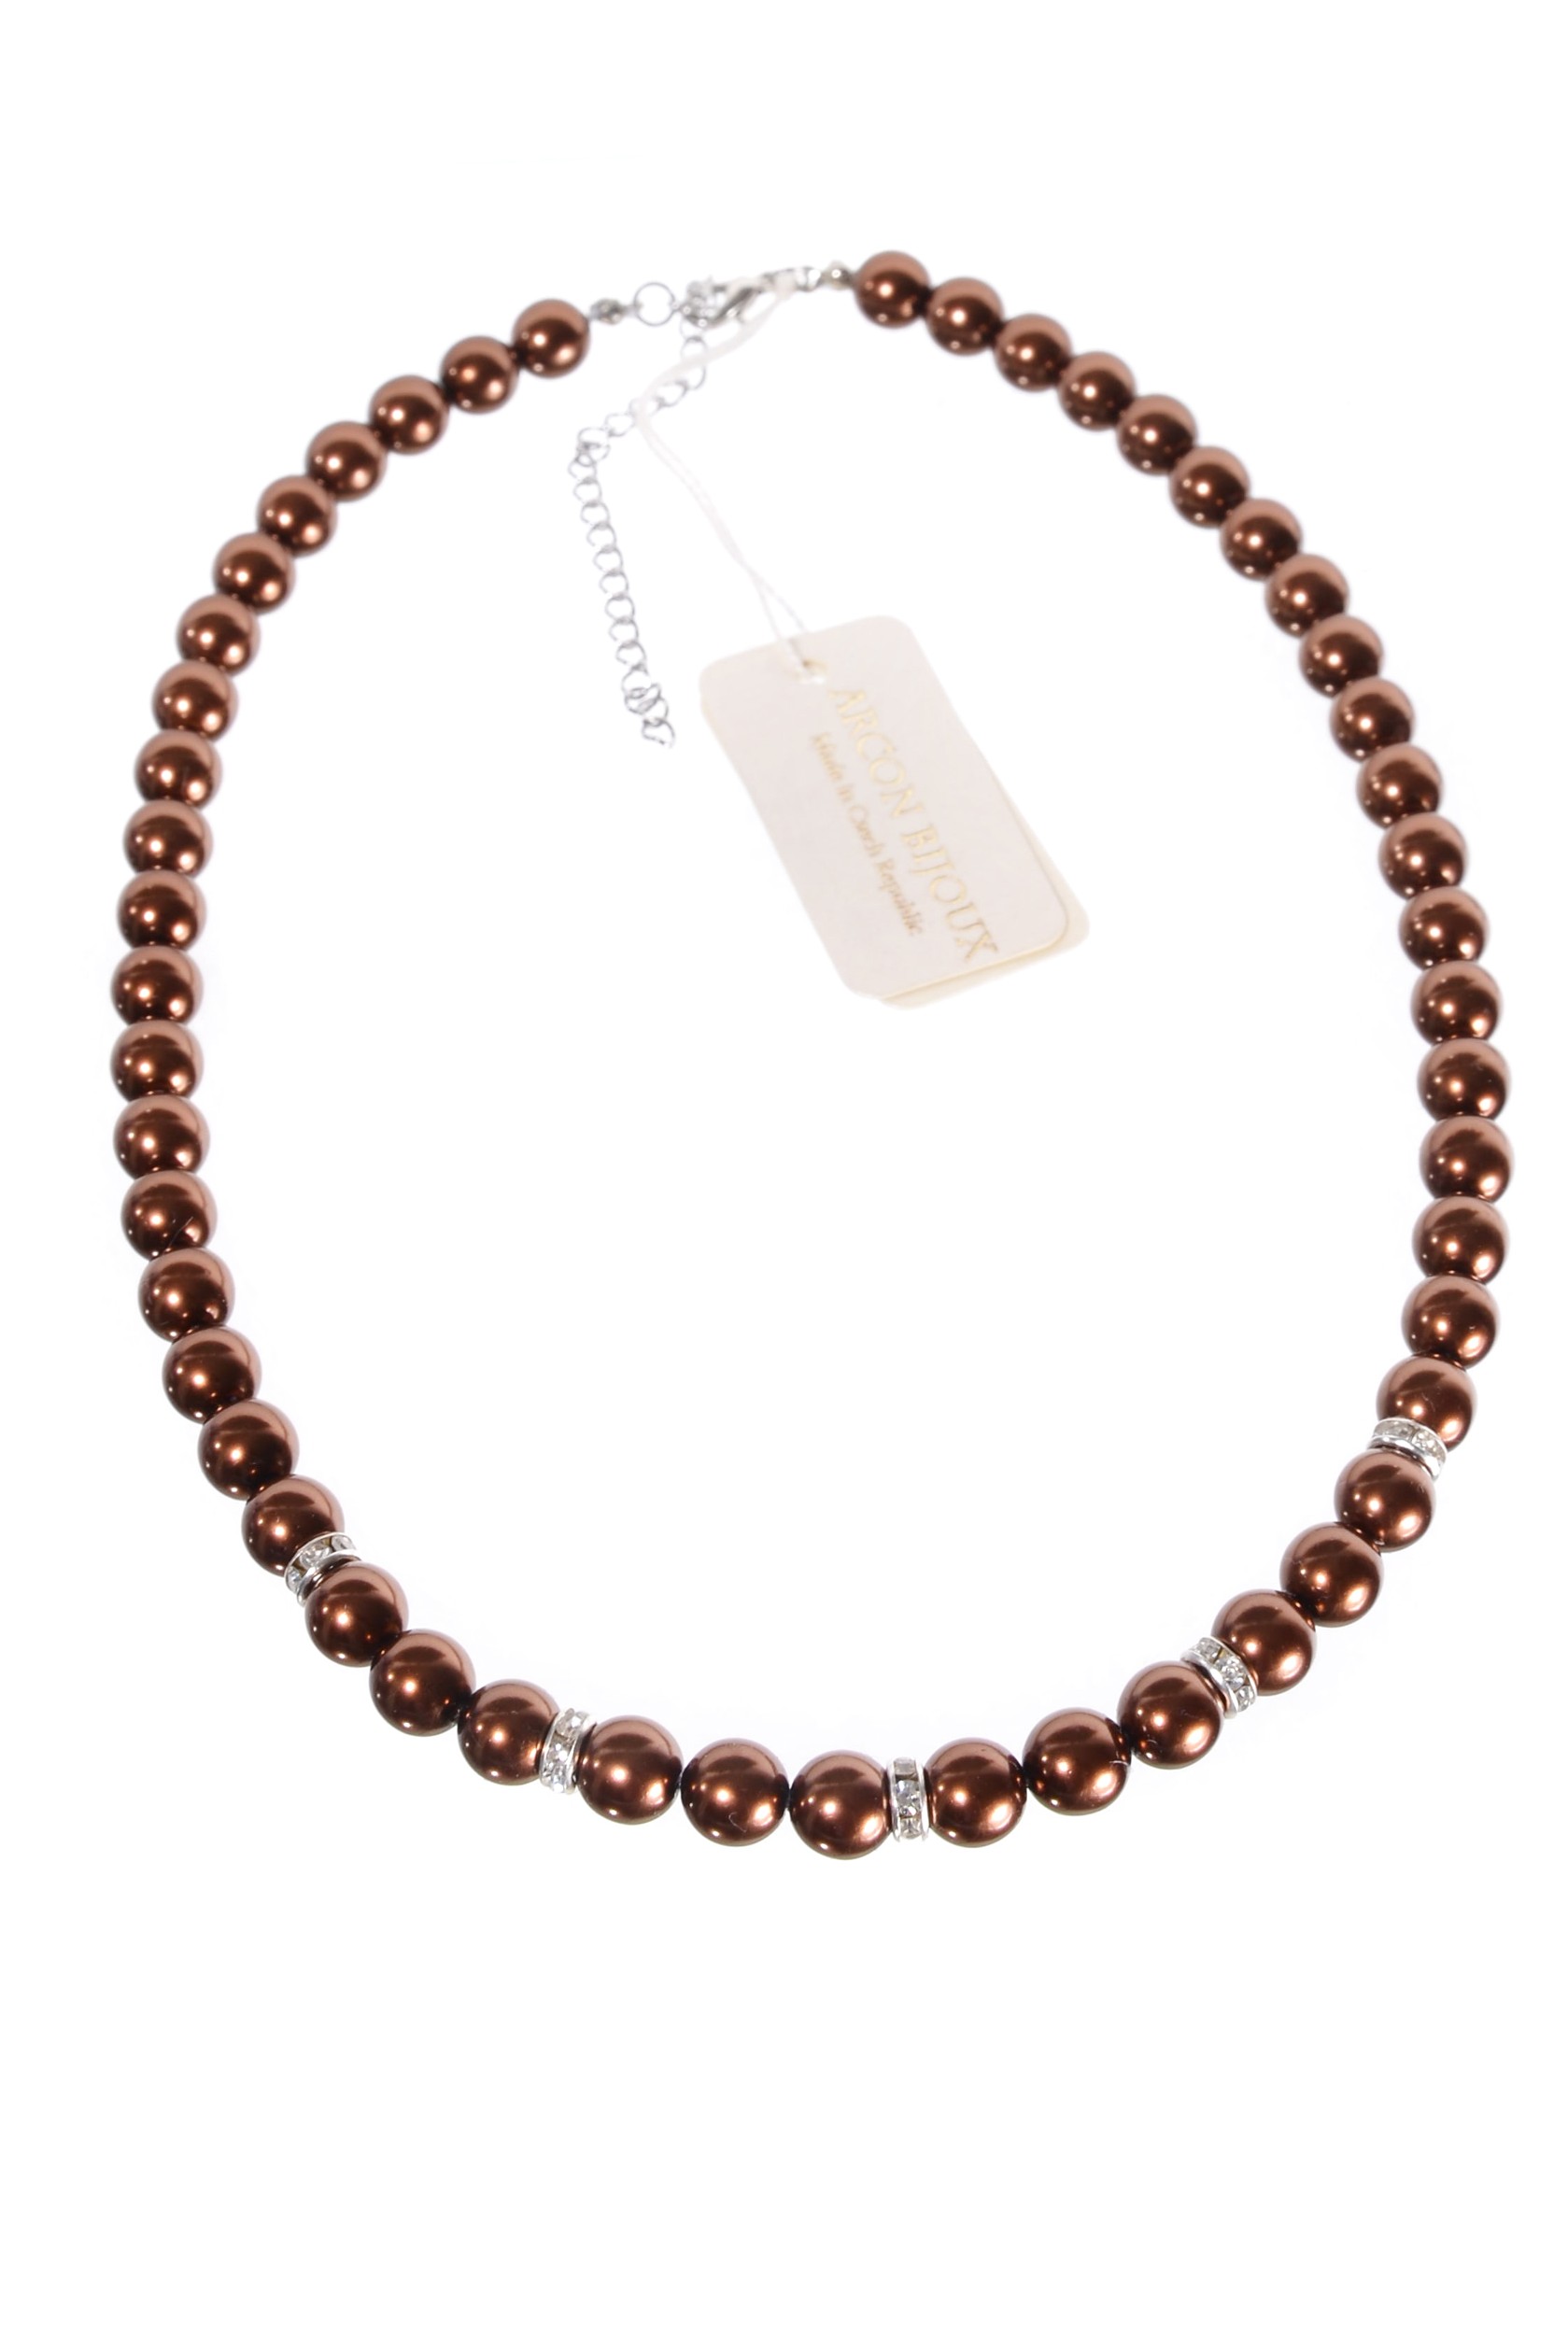 Hnědý náhrdelník z perliček H920-209